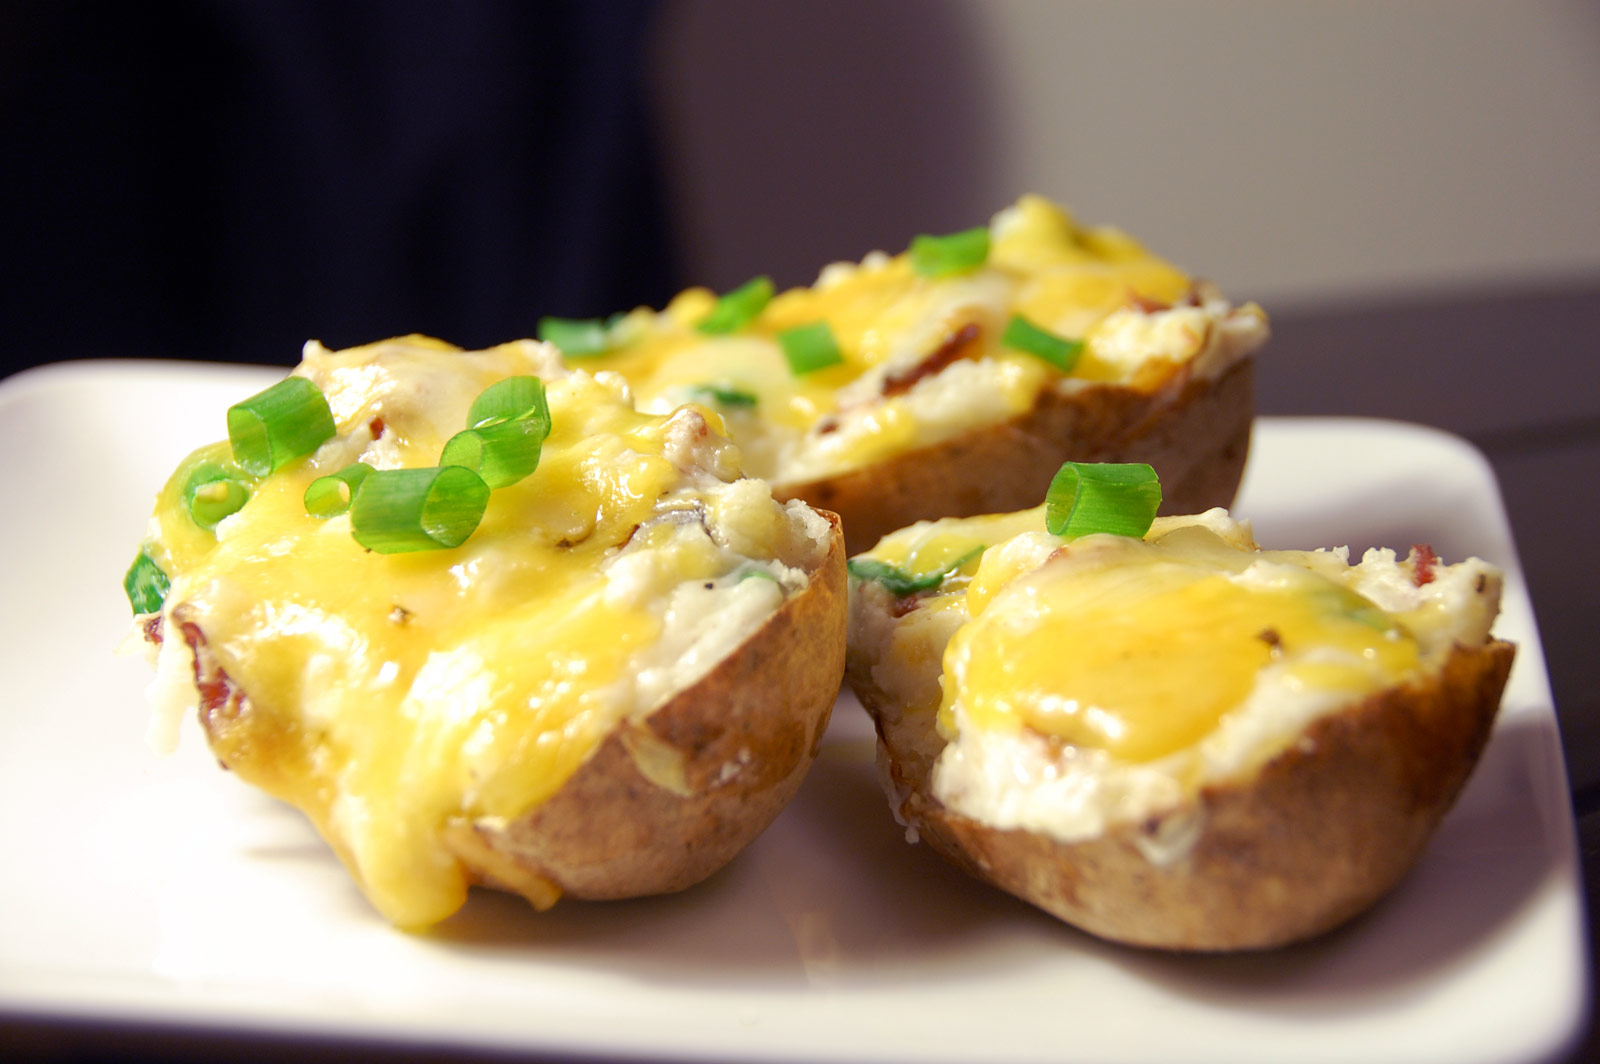 Картошка и сыр что можно приготовить. Запеченная картошка с сыром. Картофельзапеченыйс мыром. Картофель запеченный с сыром. Картошка в мундире с сыром.